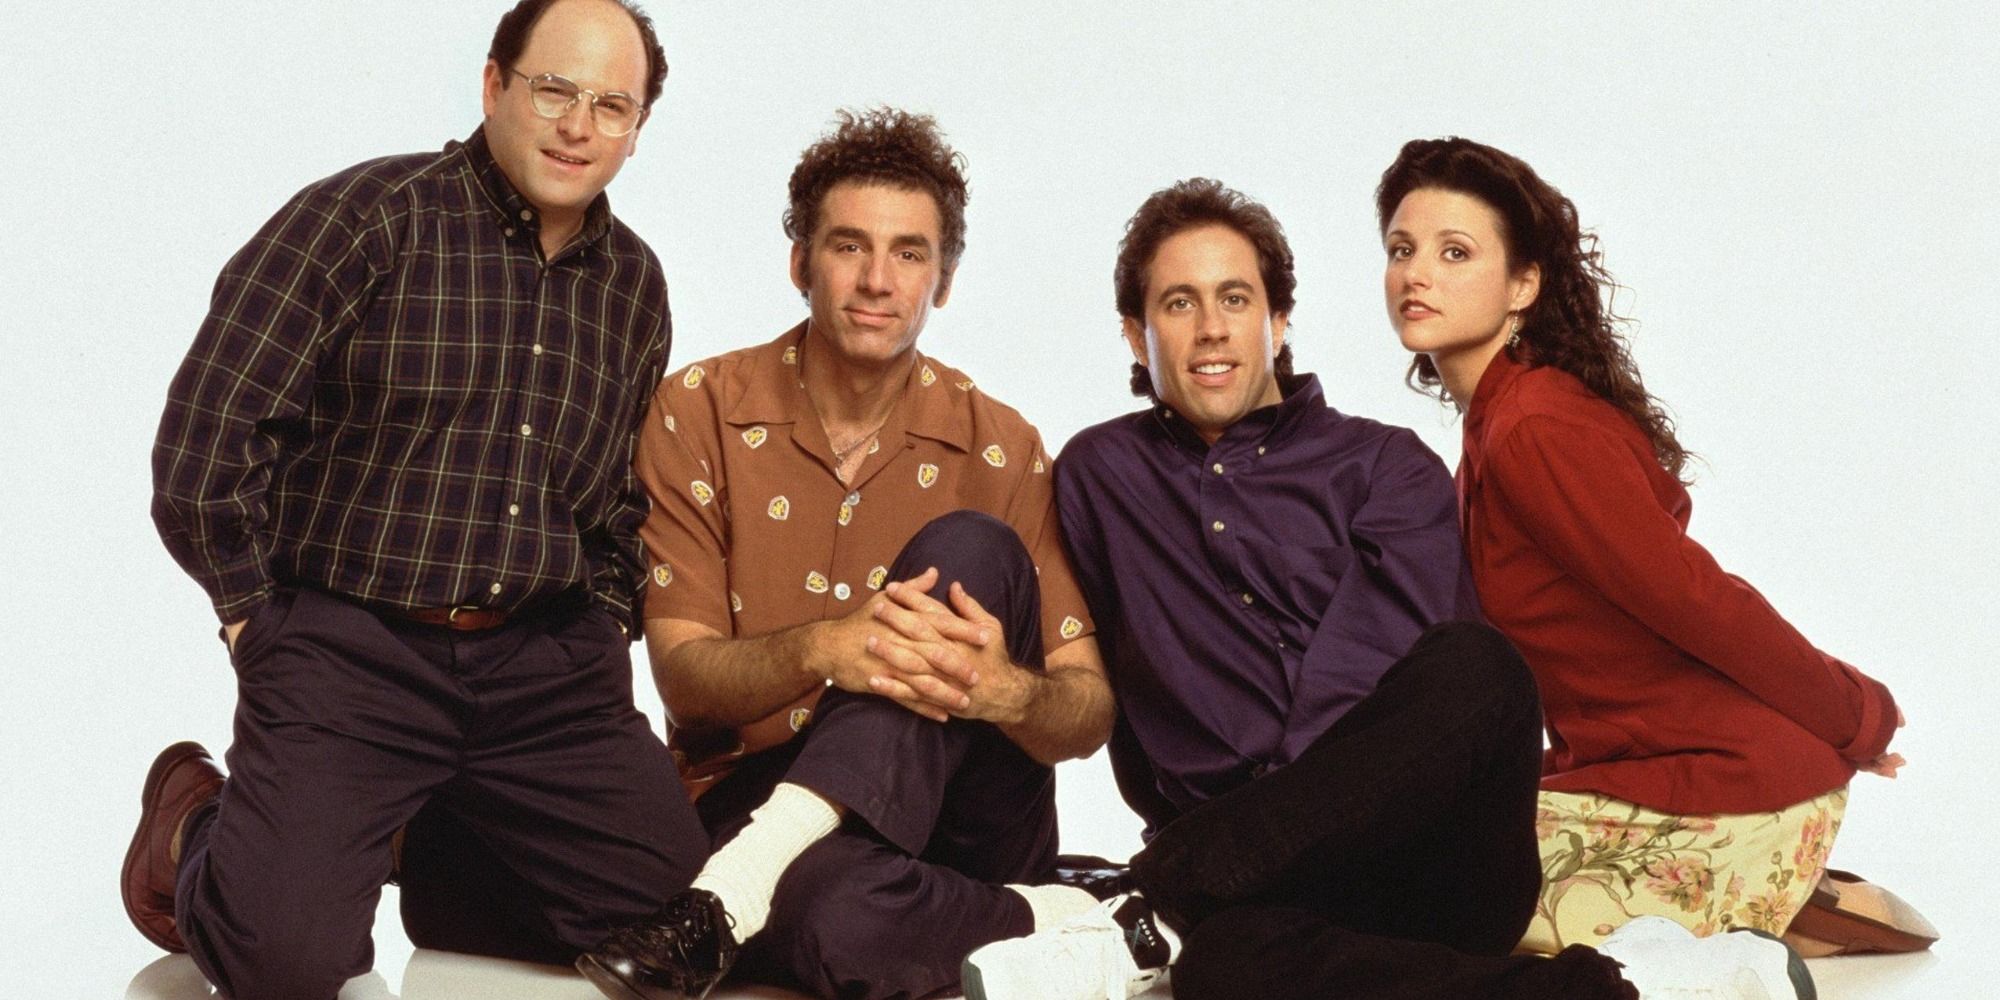 “Inventado por los medios”: la llamada maldición de Seinfeld criticada por la estrella original